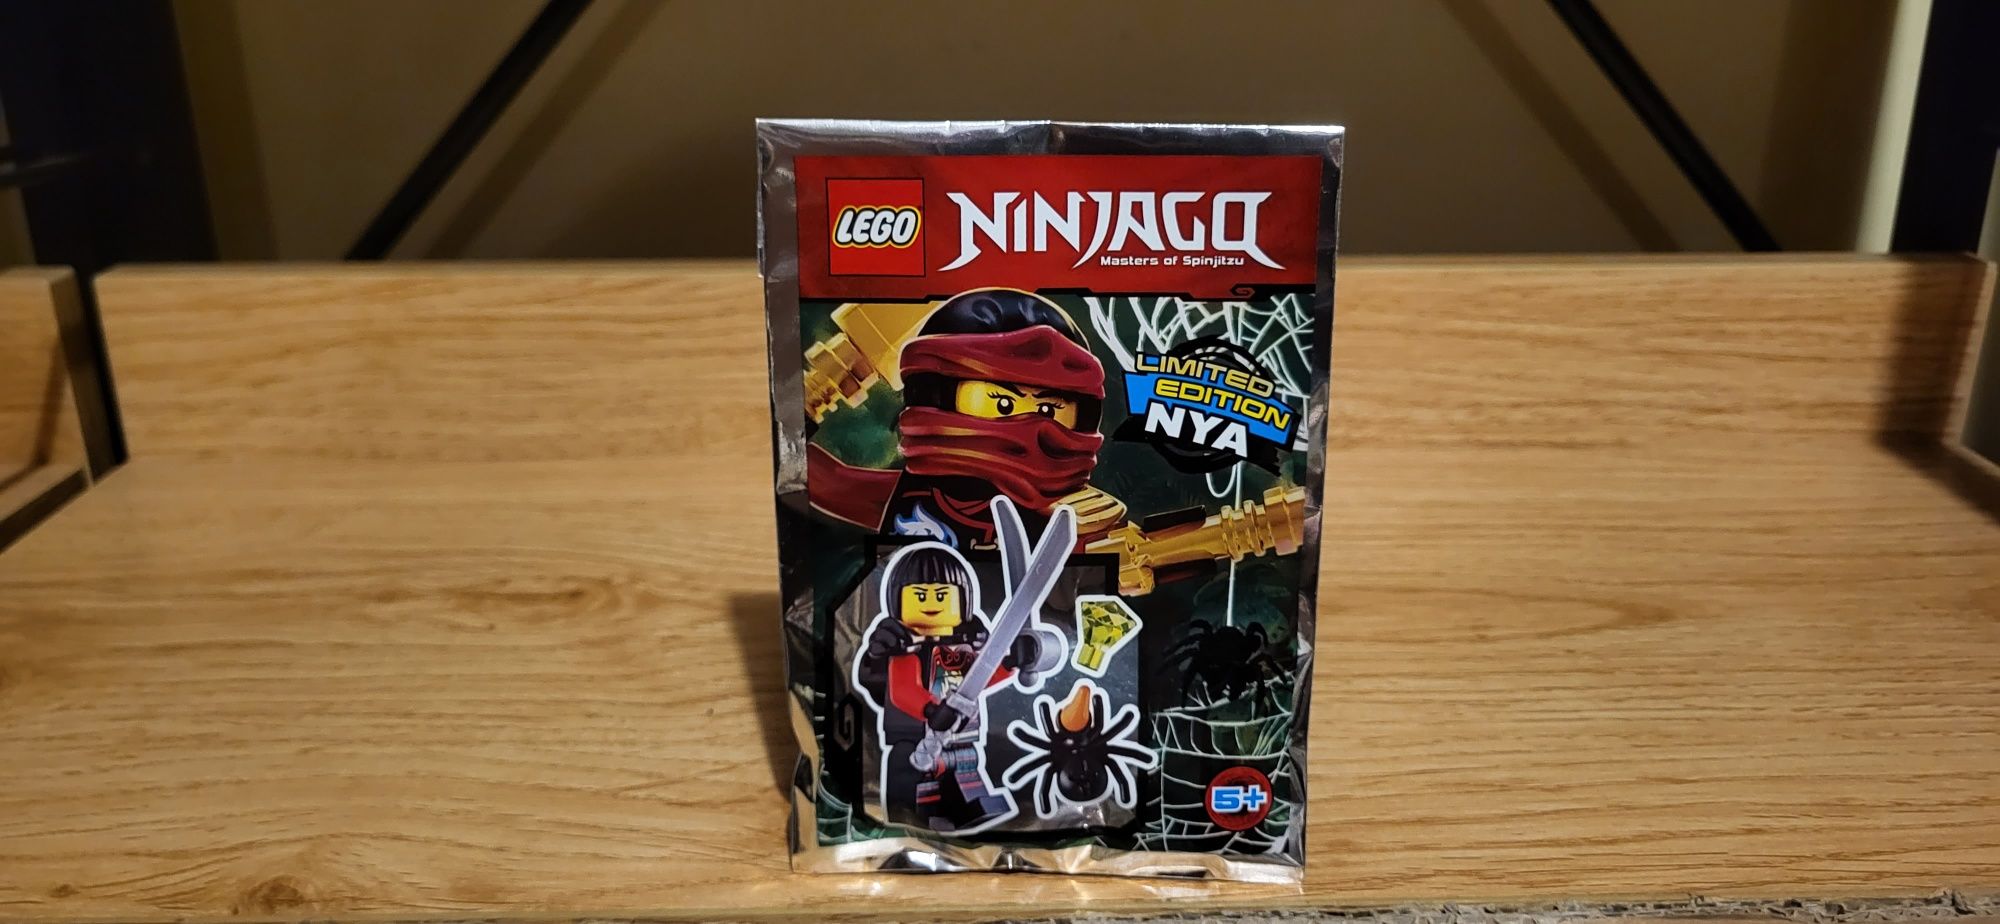 Lego Ninjago 891620 Nya plus miecz szabla saszetka z klockami